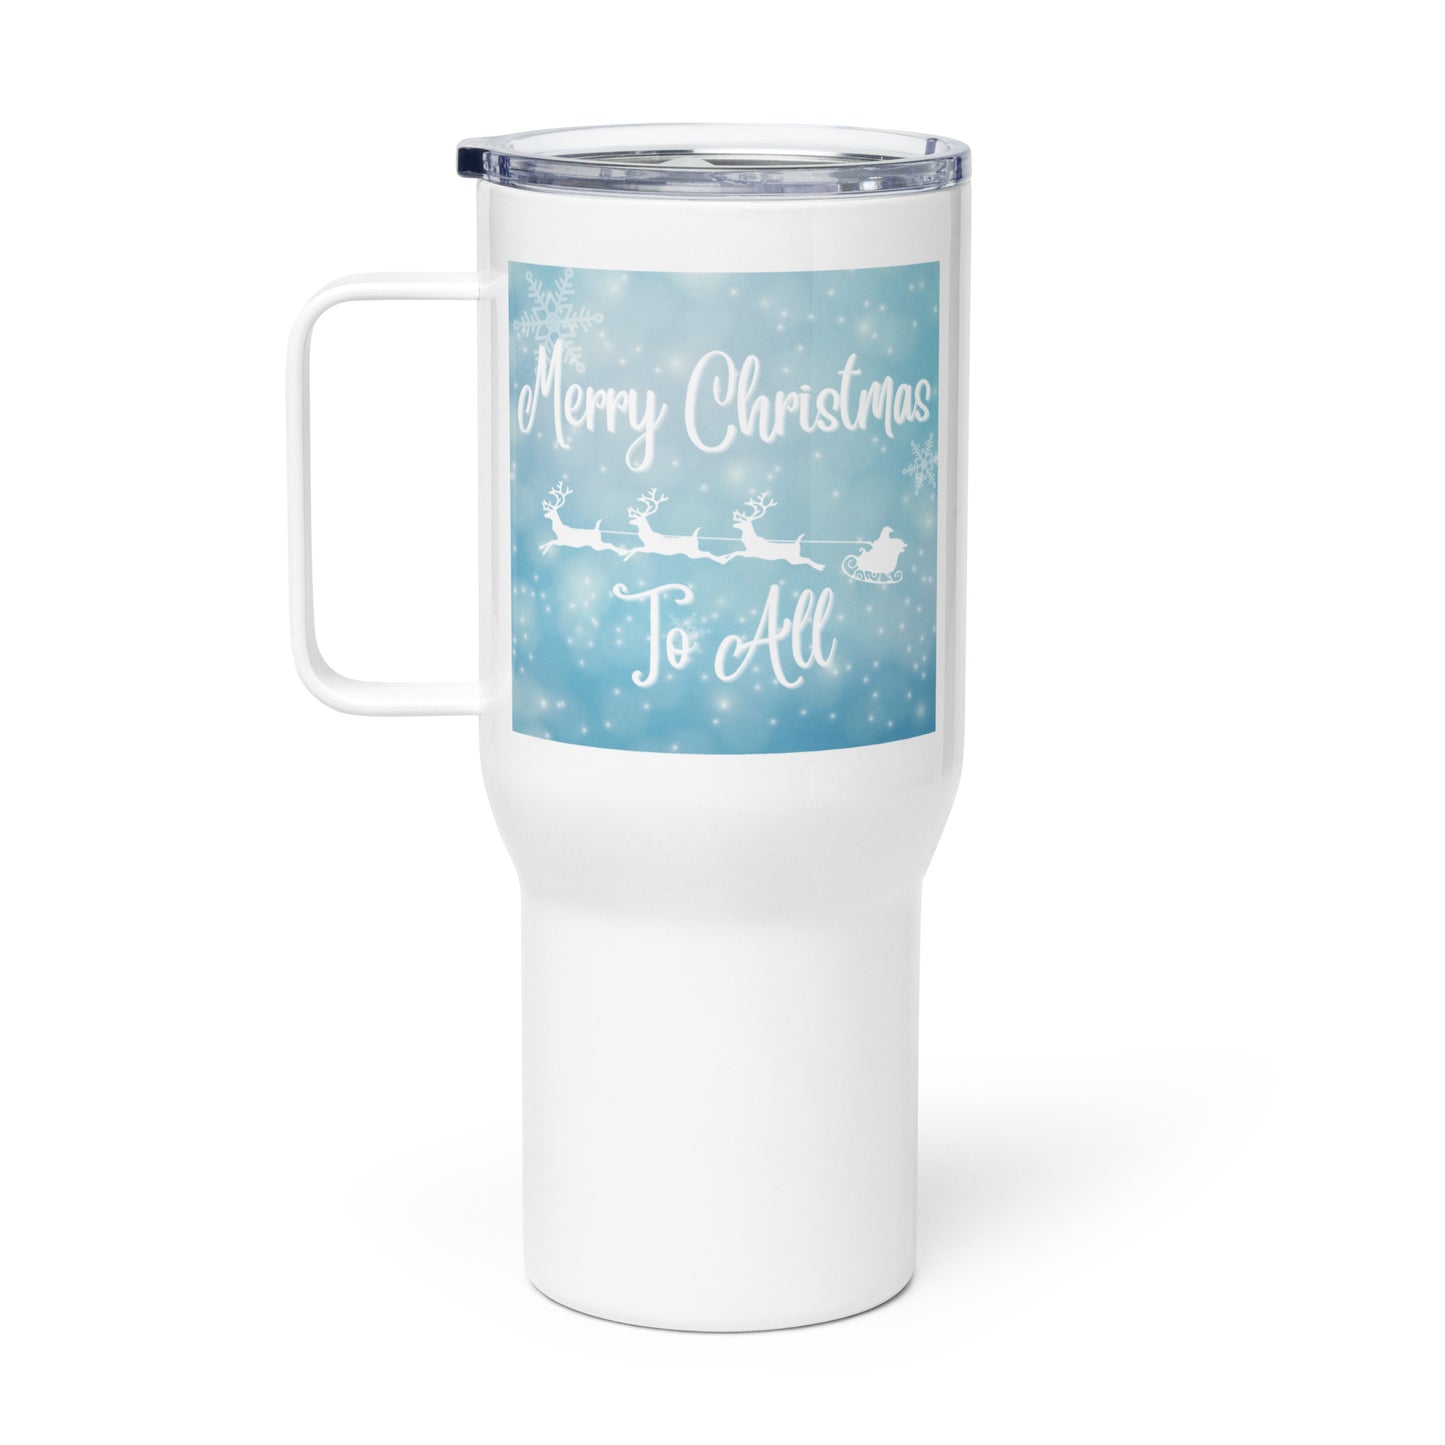 Merry Christmas to All:  Travel mug with a handle